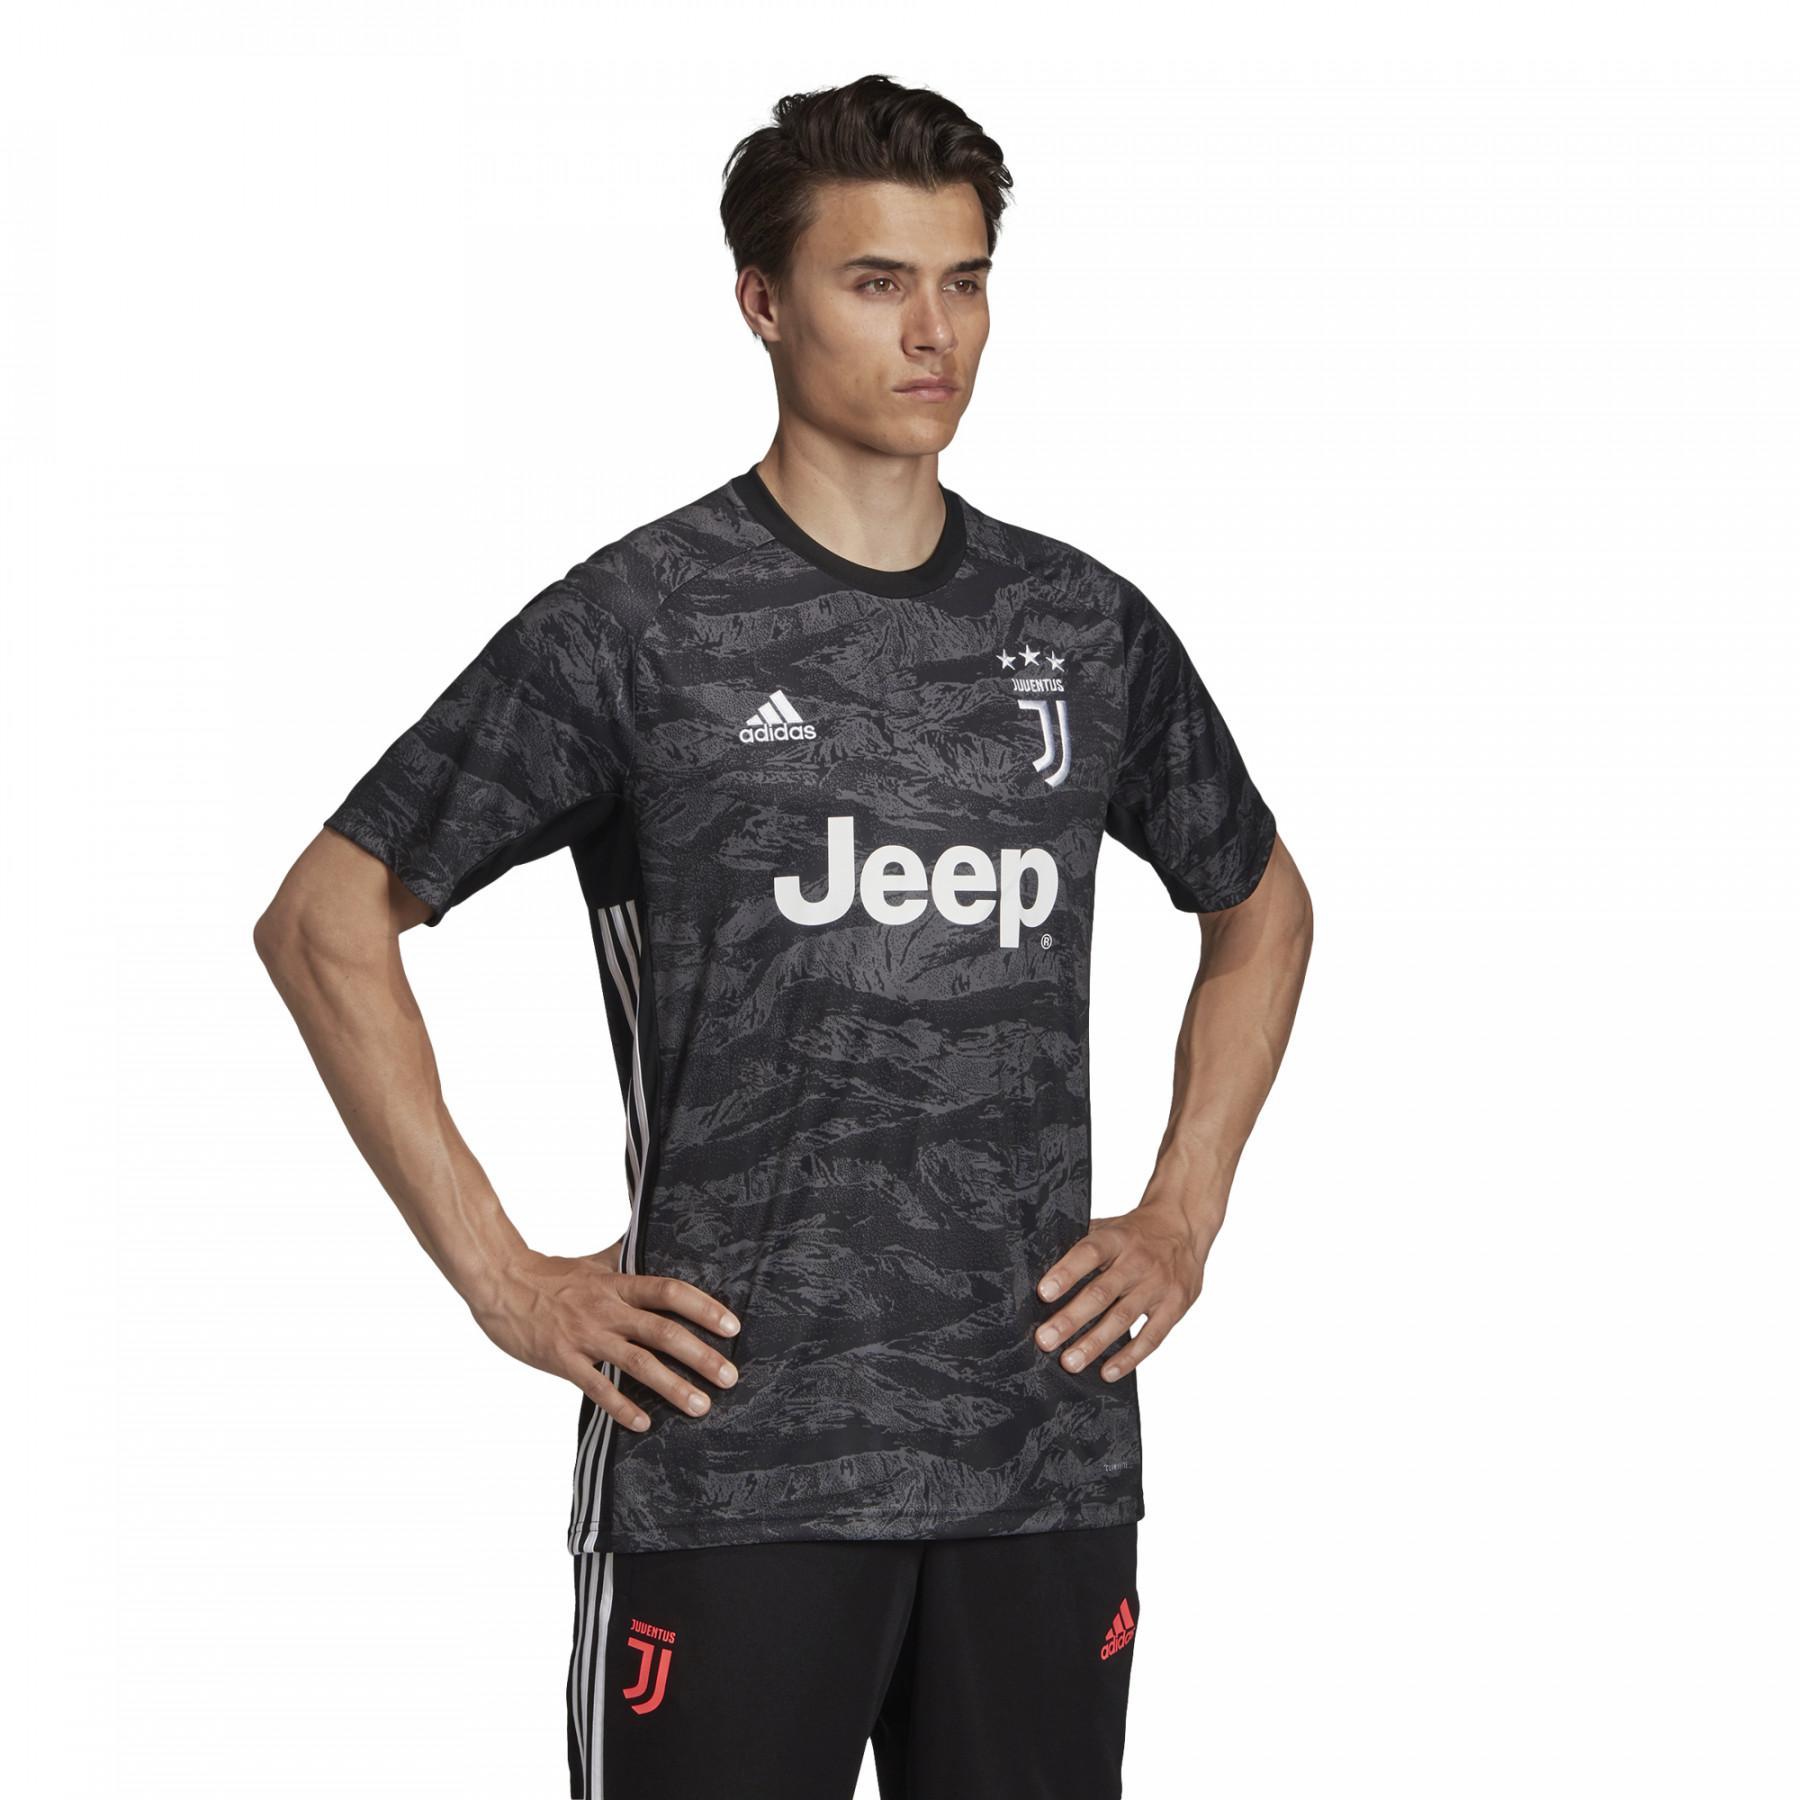 Goalie Jersey Juventus Turin Goalkeeper 2019/20